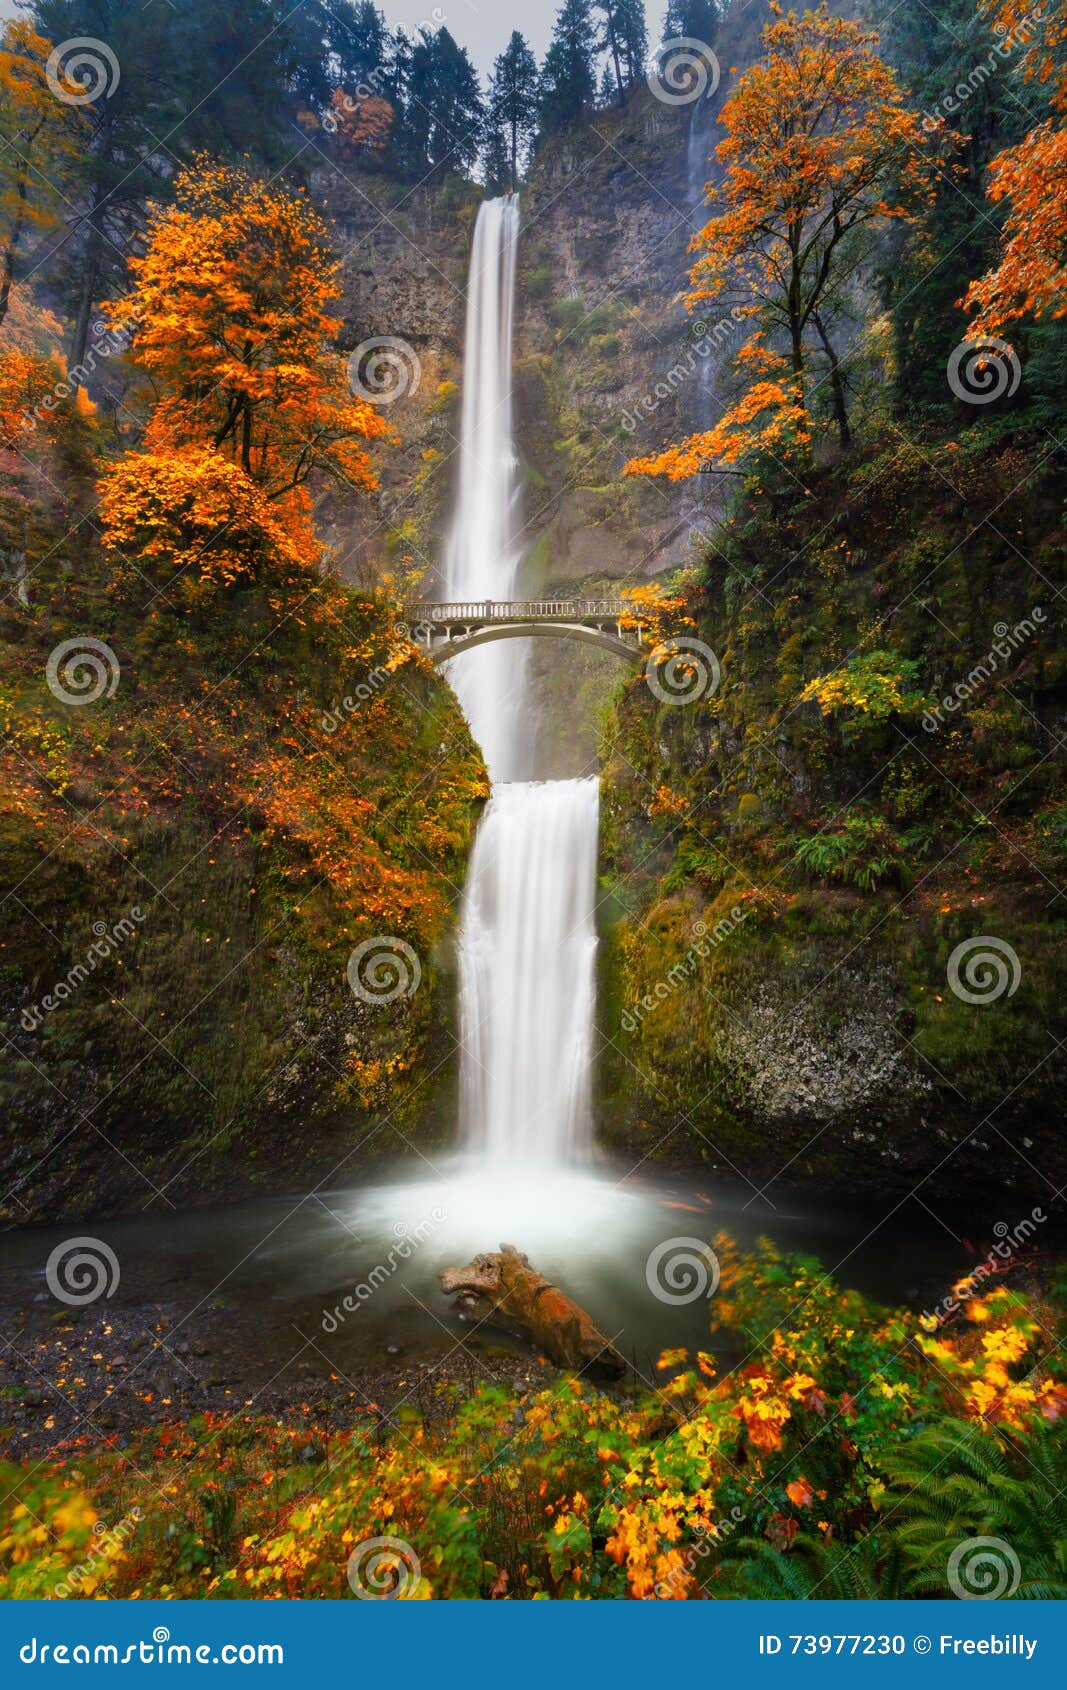 multnomah falls in autumn colors